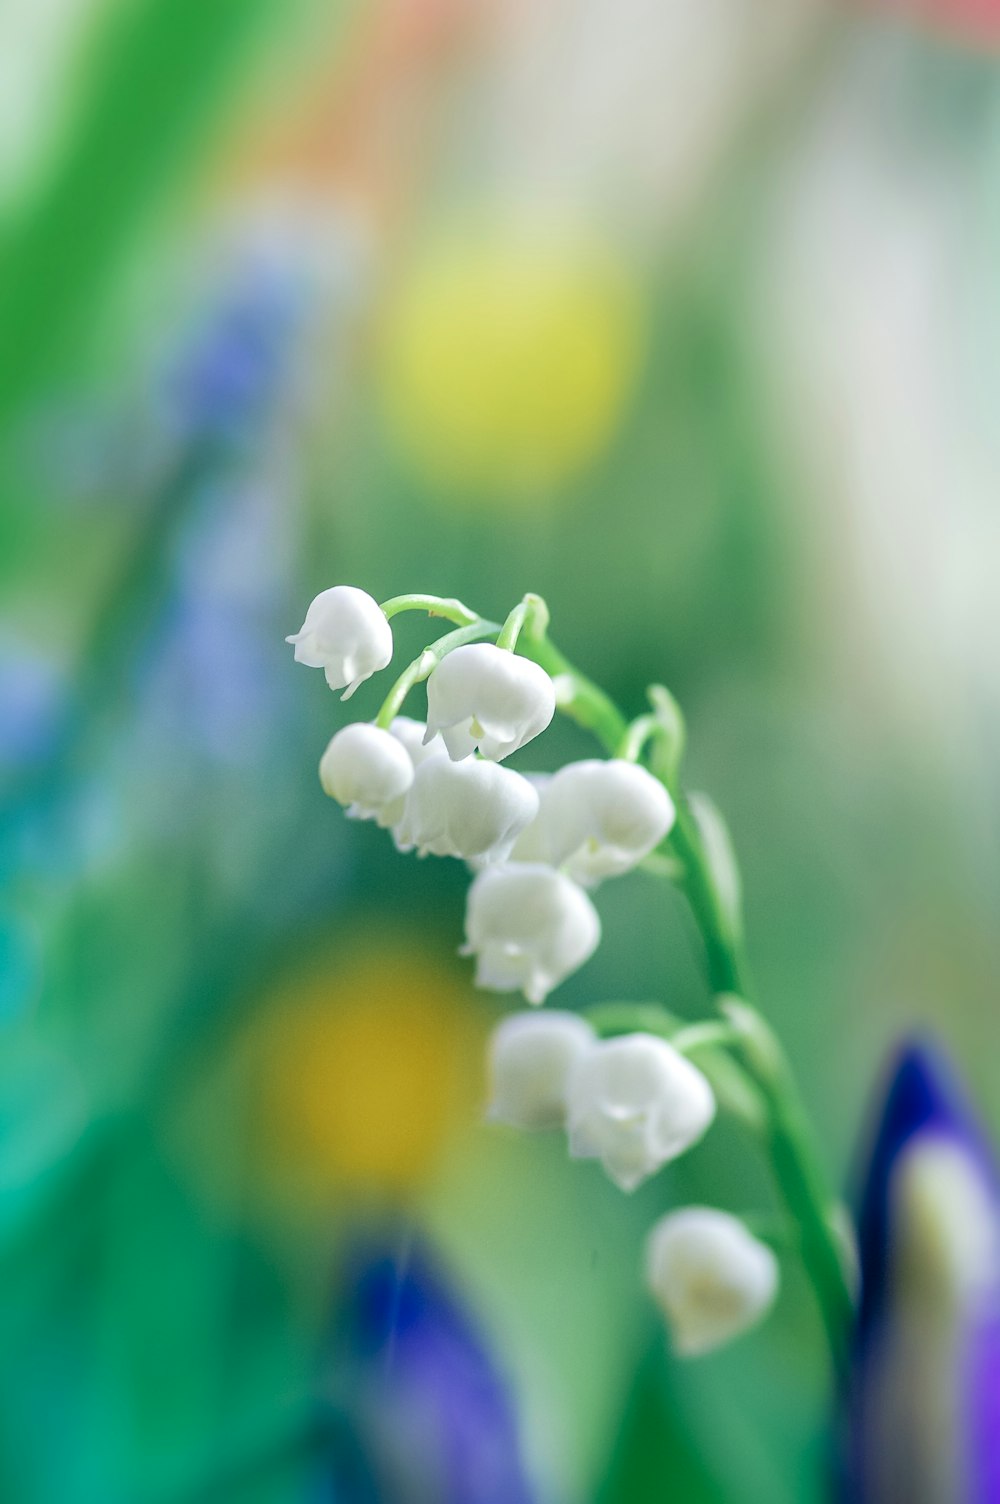 틸트 시프트 렌즈의 흰색 꽃 봉오리